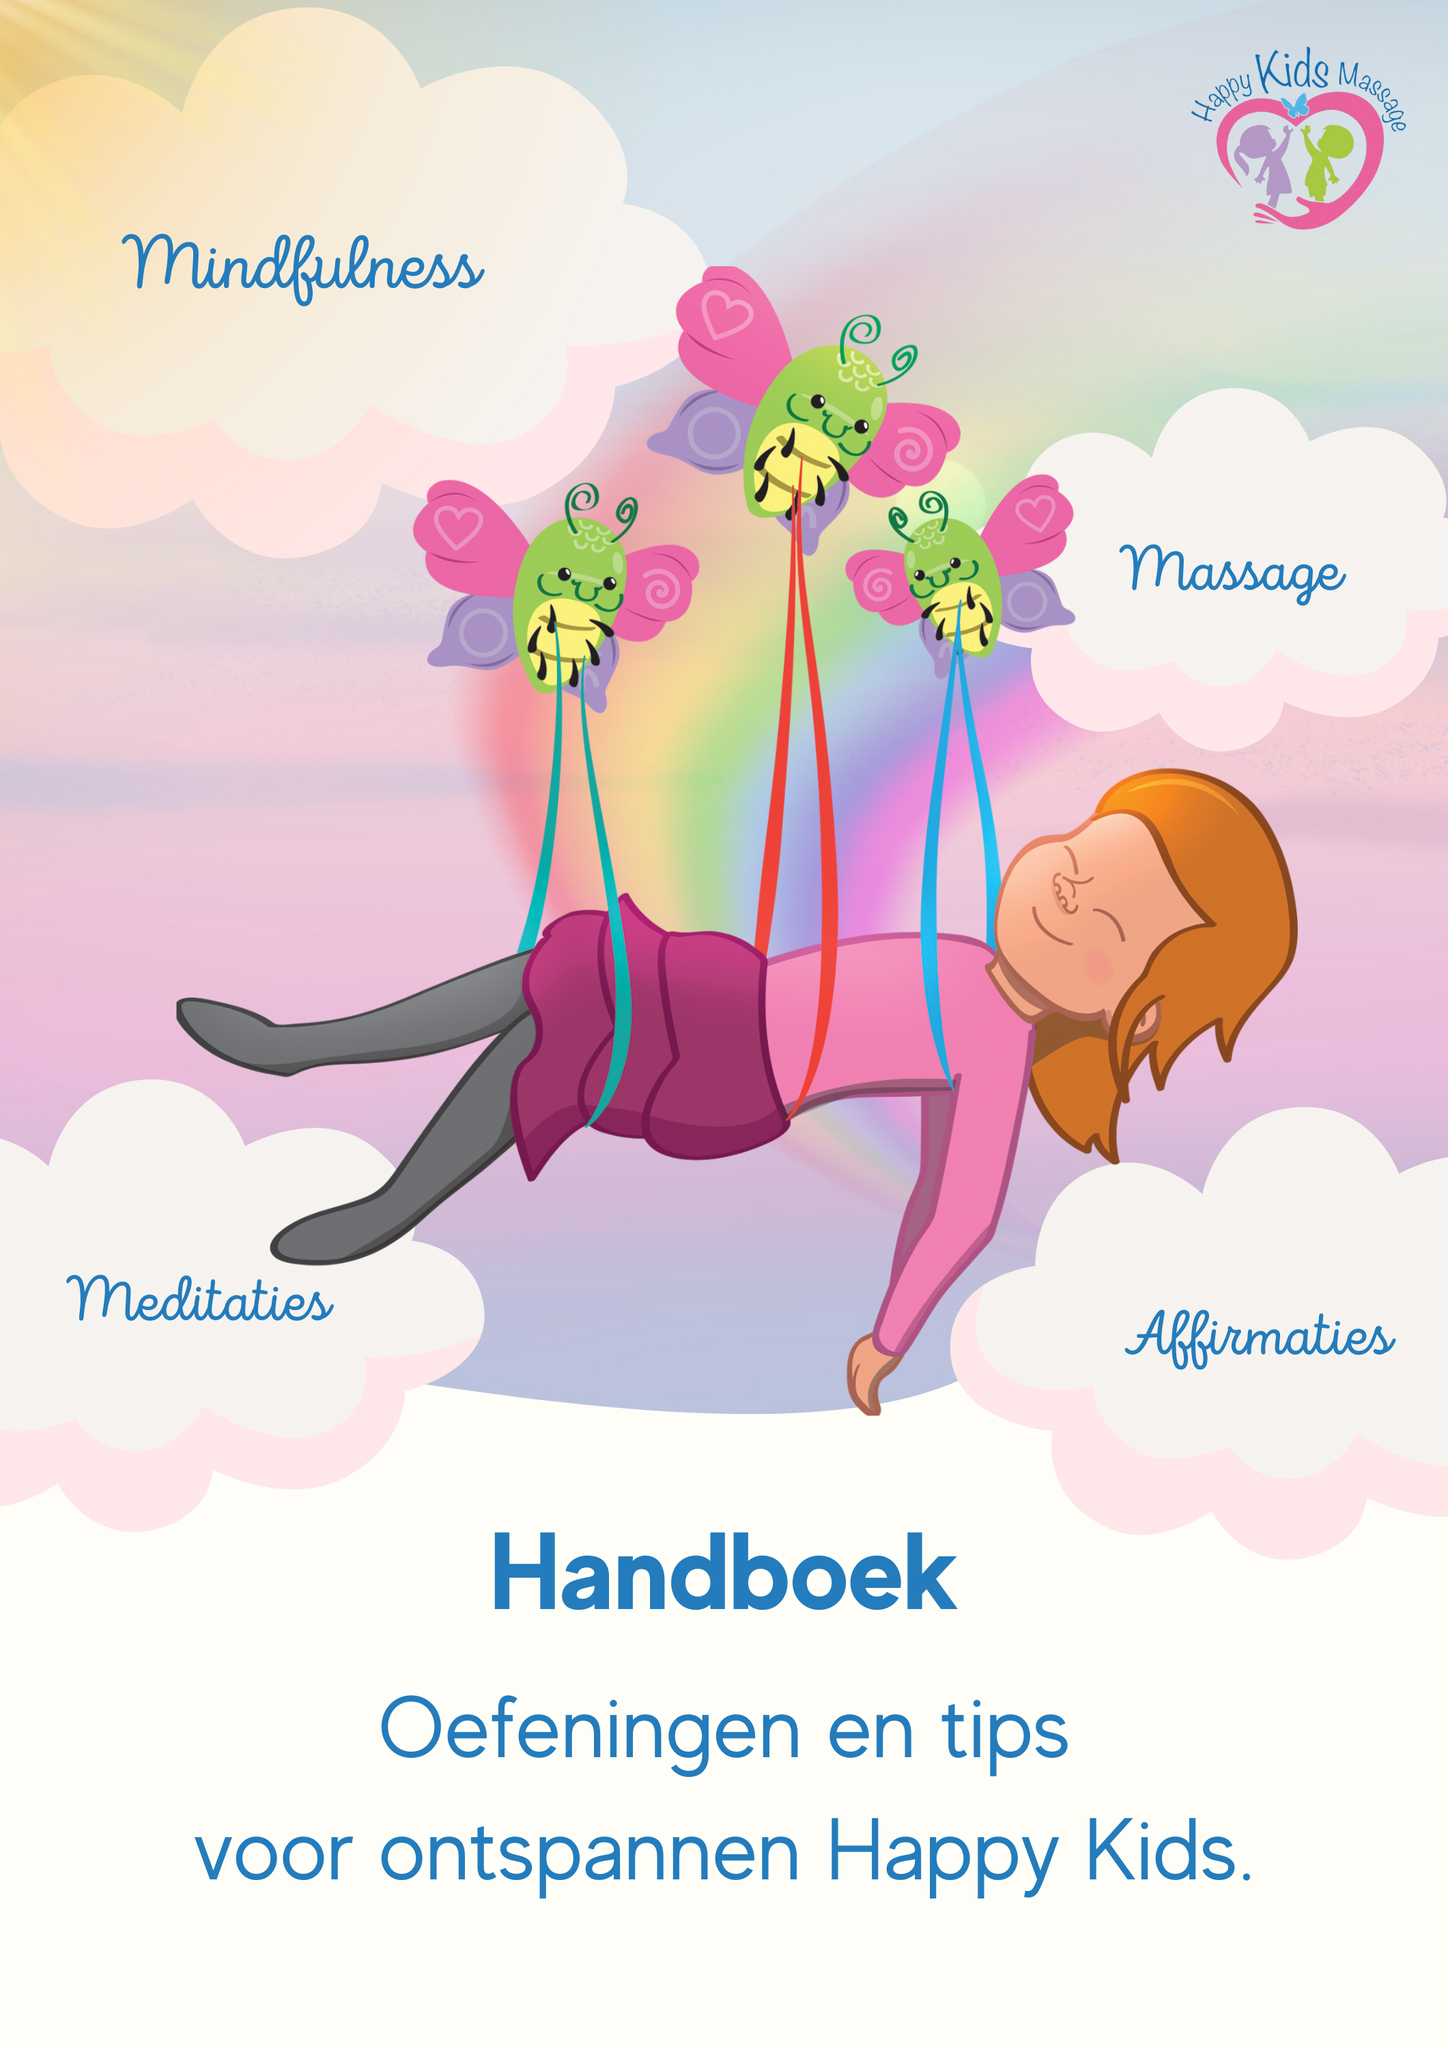 Handboek. Oefeningen en tips voor ontspannen Happy Kids